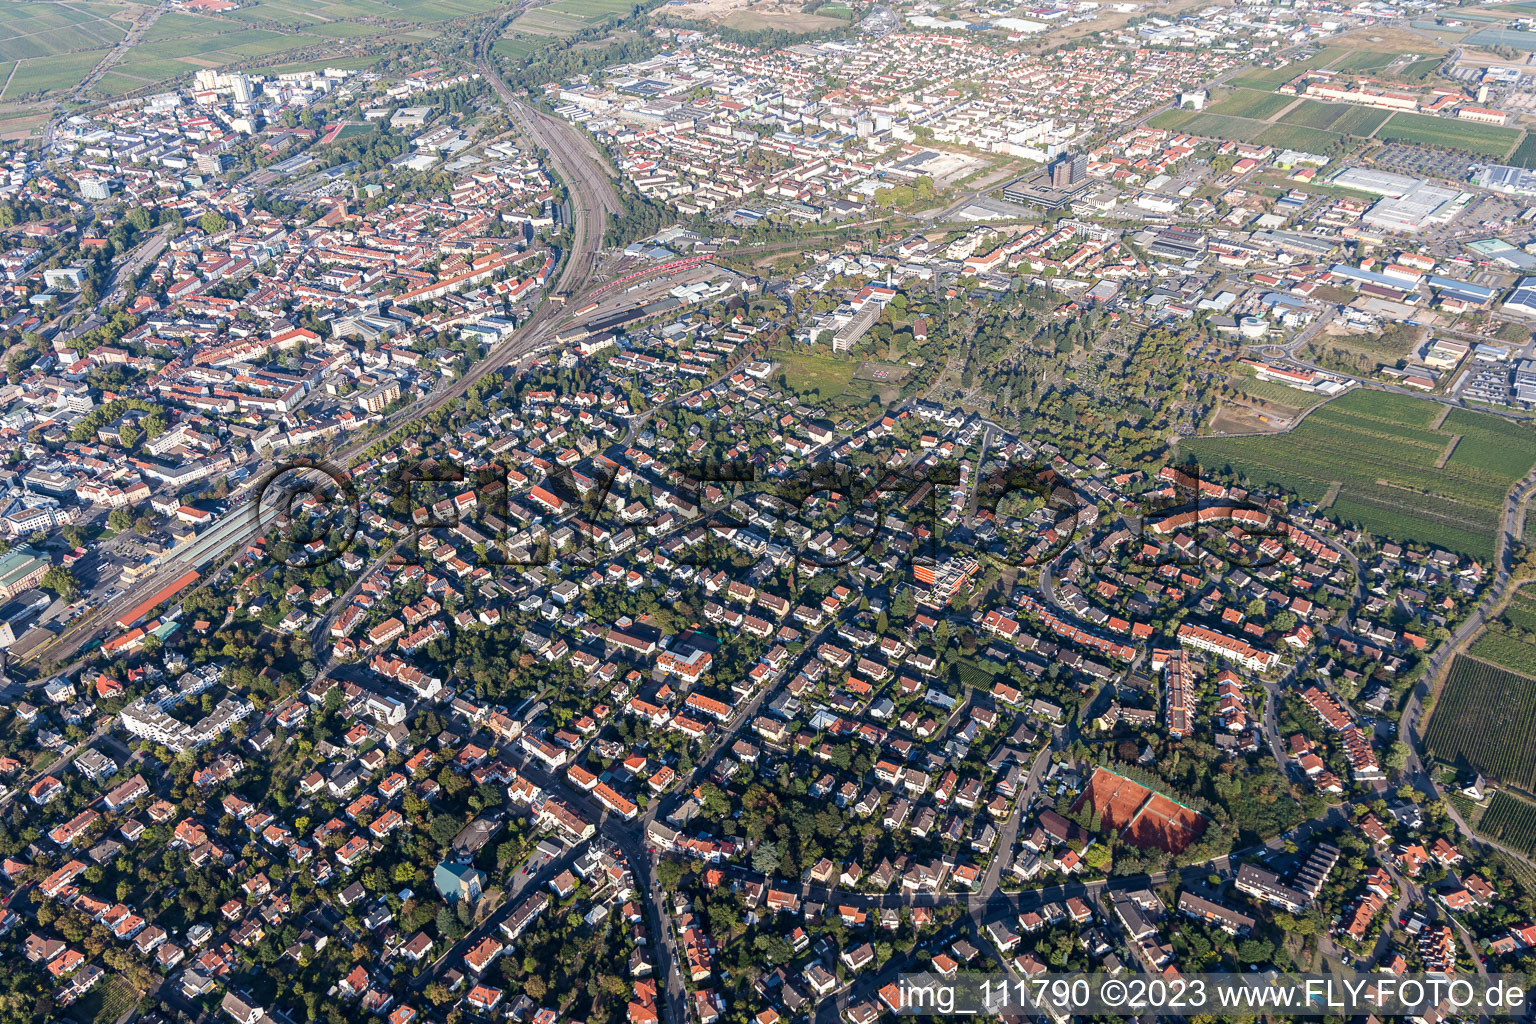 Neustadt an der Weinstraße dans le département Rhénanie-Palatinat, Allemagne du point de vue du drone